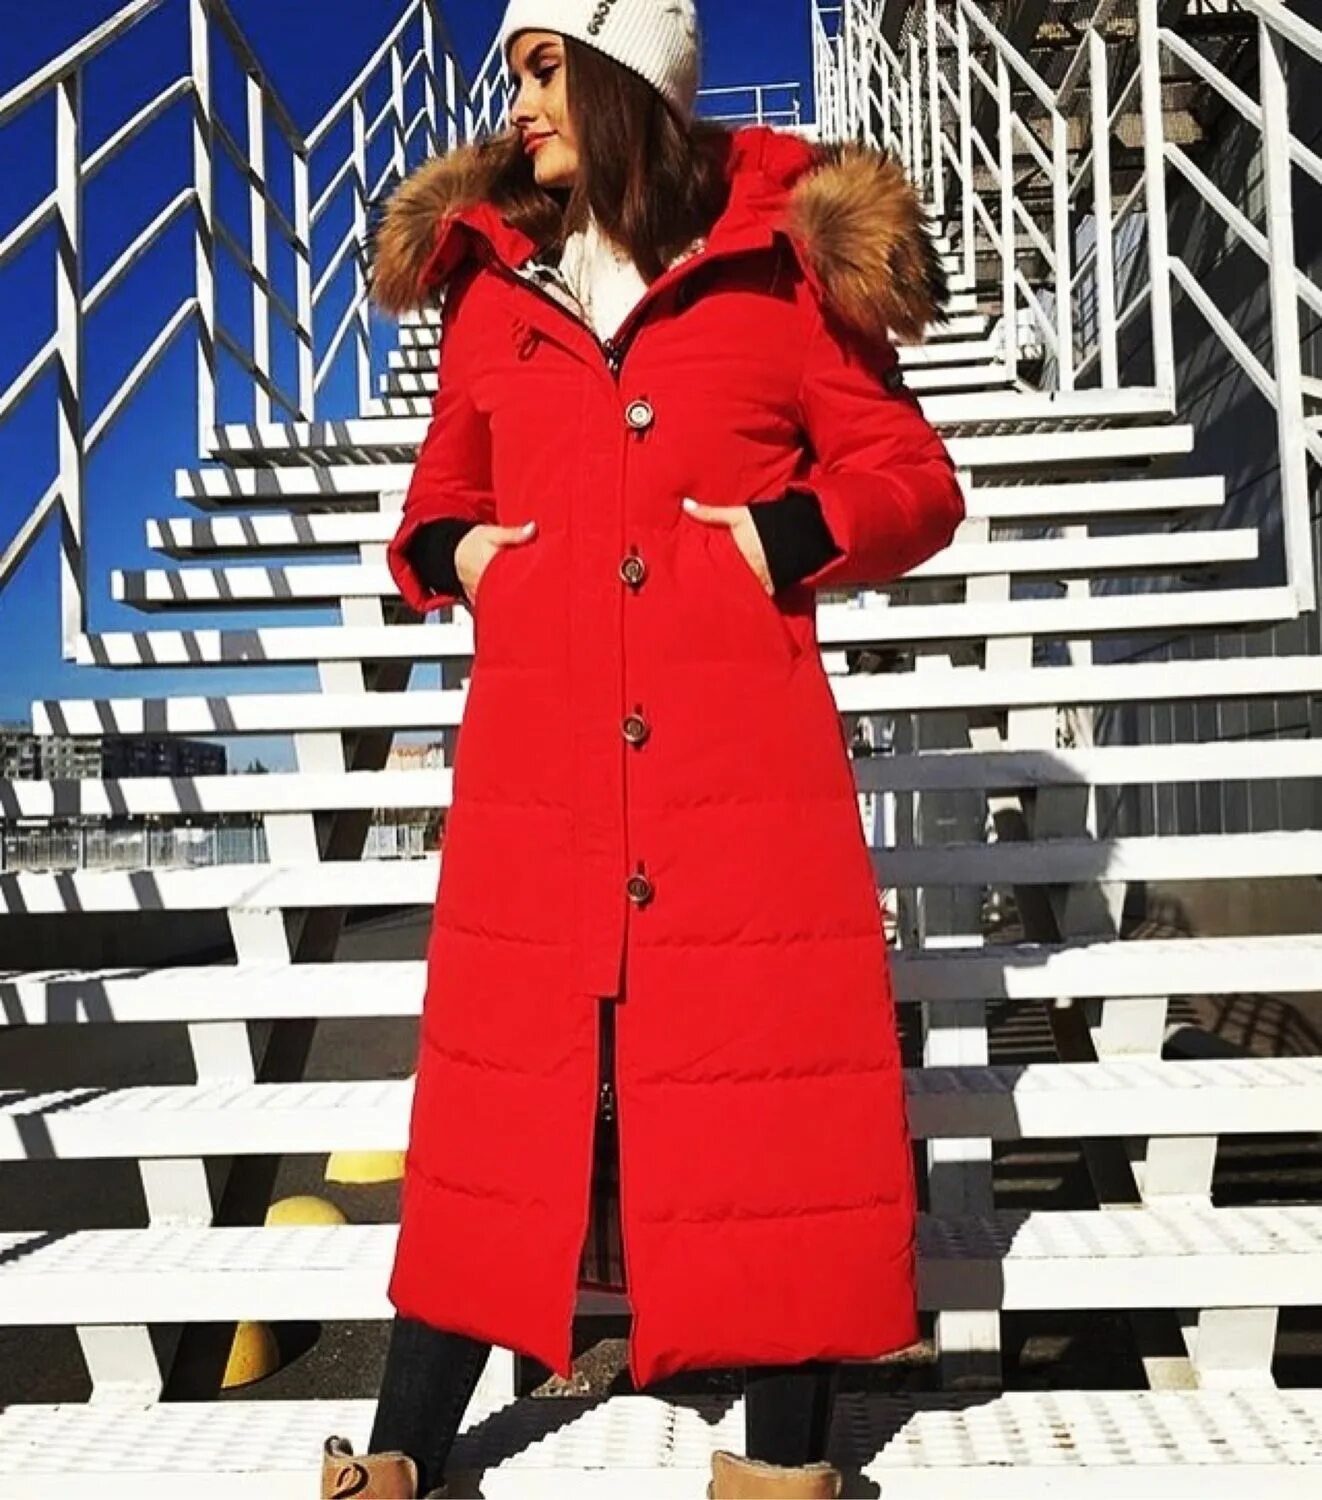 Купить удлиненный куртку зимнюю женскую. Красный длинный пуховик женский. Красный пуховик женский. Красная длинная куртка женская. Длинный пуховик.